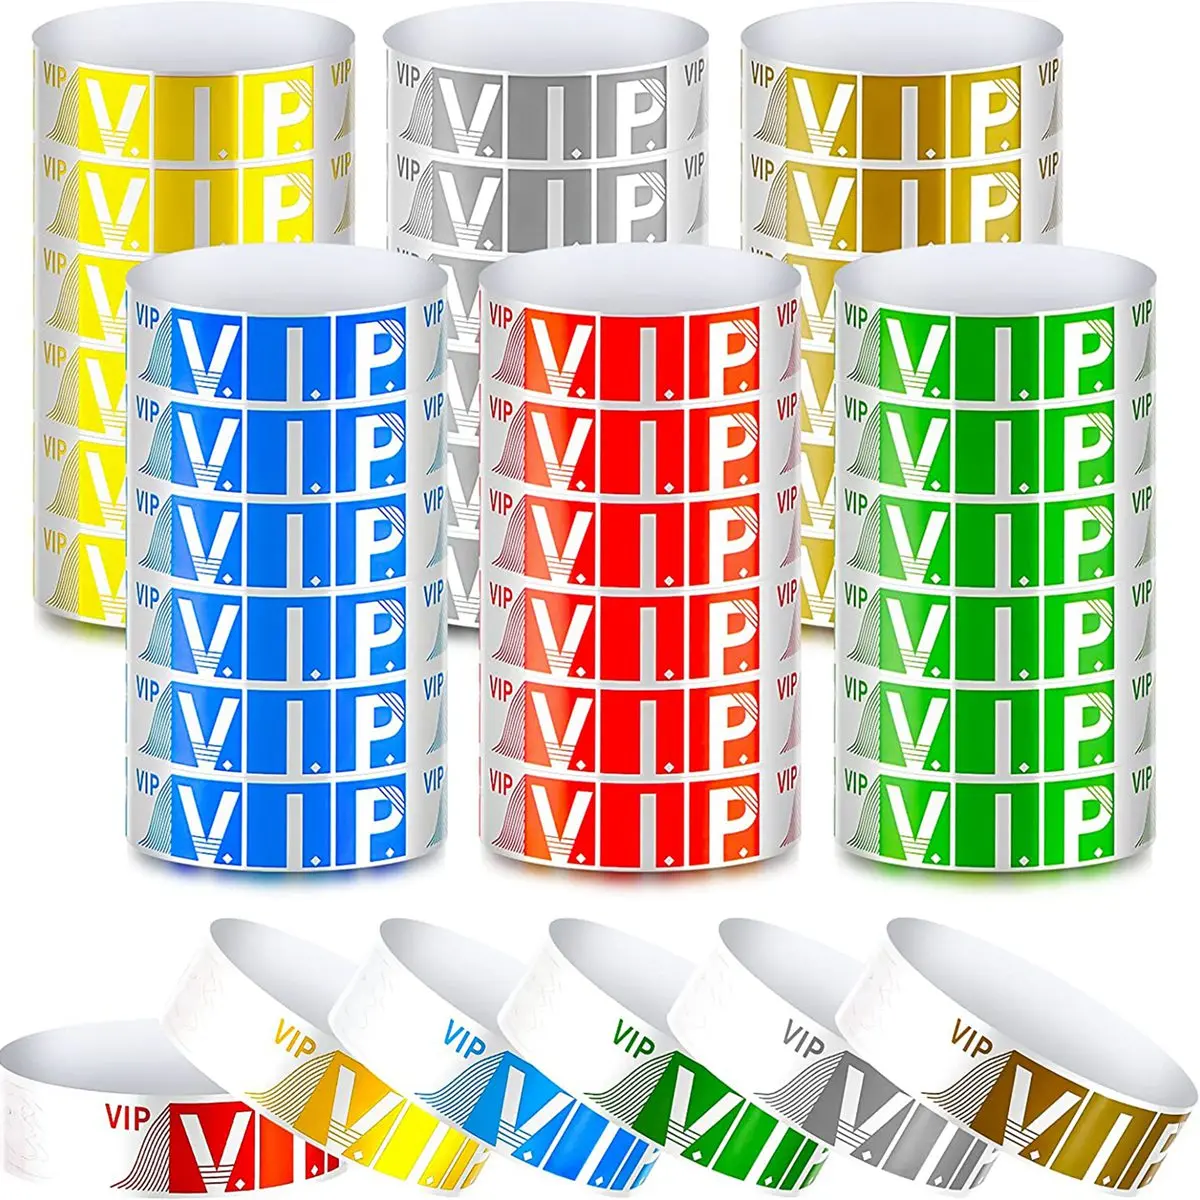 600 упаковок VIP Бумажных браслетов VIP Браслеты Водонепроницаемые VIP браслеты Браслеты неонового цвета Разнообразие для мероприятий вечеринок